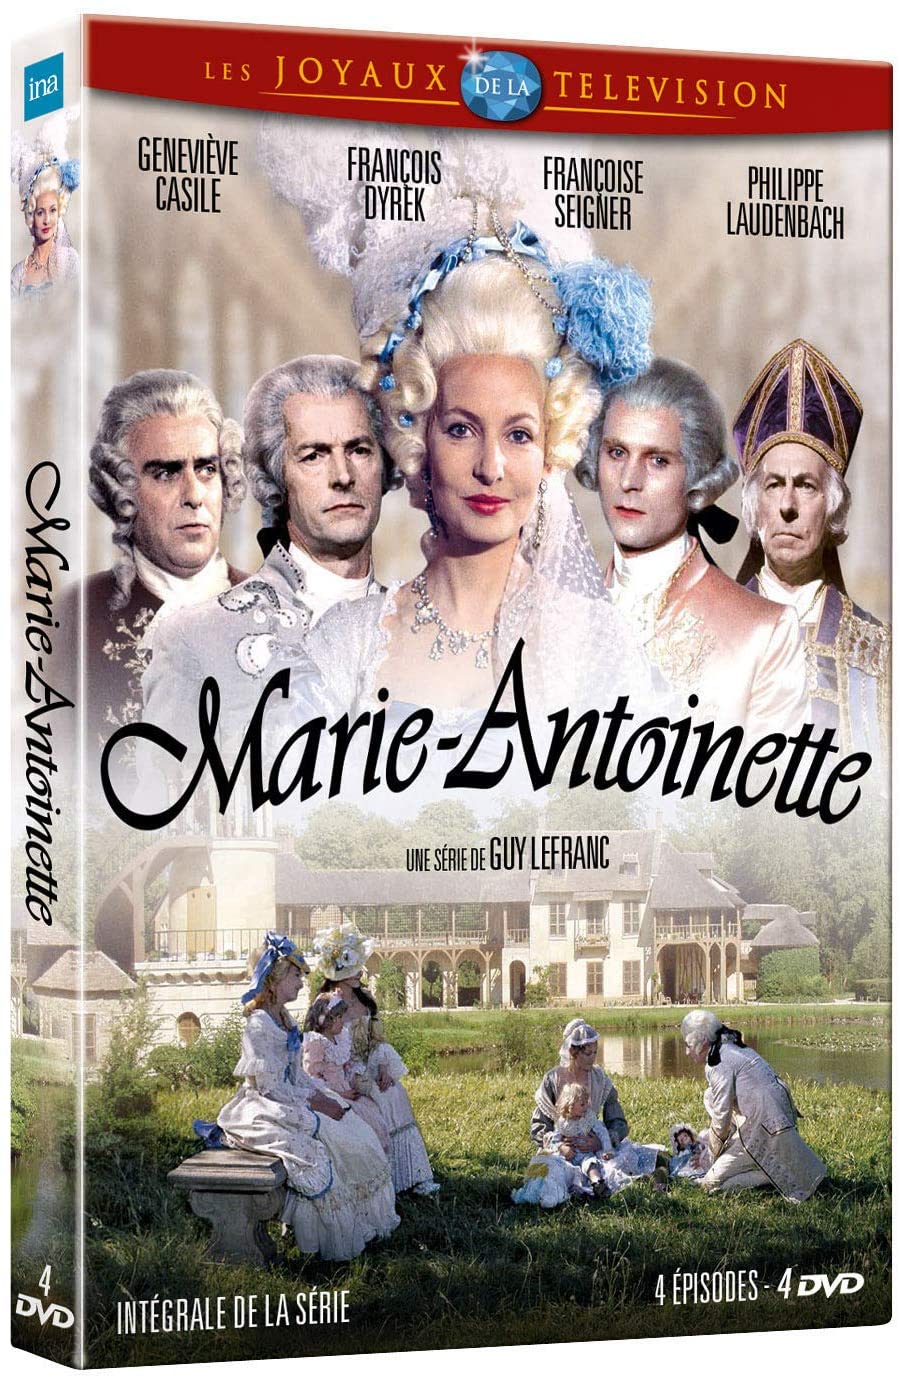 Série Marie Antoinette (1975) de Guy-André Lefranc, avec Geneviève Casile - Page 2 81rgln11